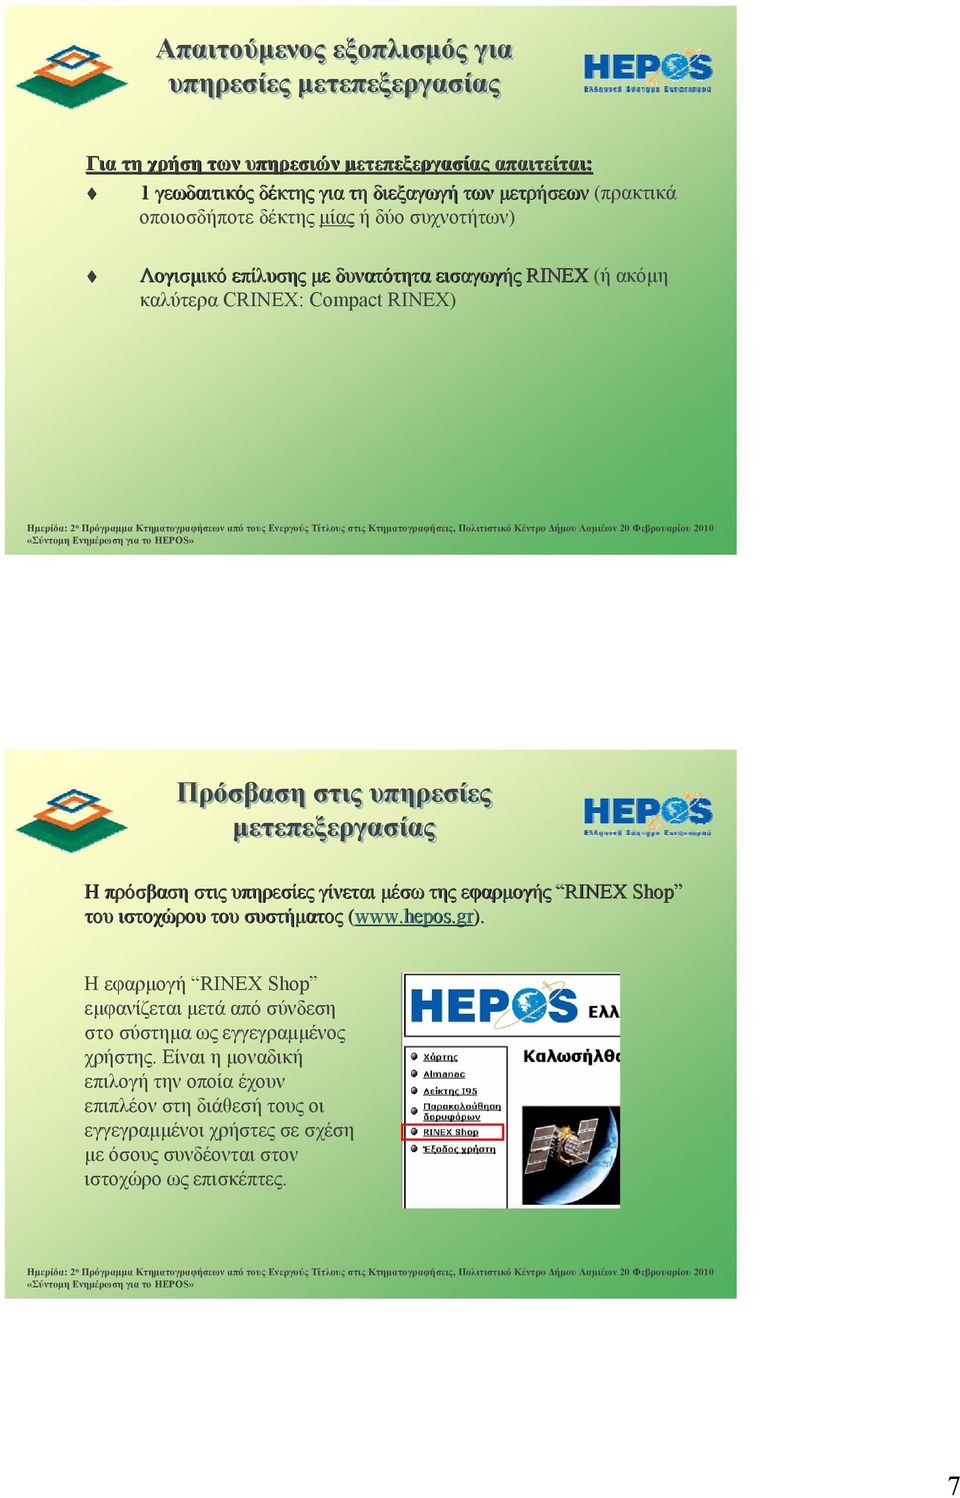 πρόσβαση στις υπηρεσίες γίνεται μέσω της εφαρμογής RINEX Shop του ιστοχώρου του συστήματος (www.hepos.gr).